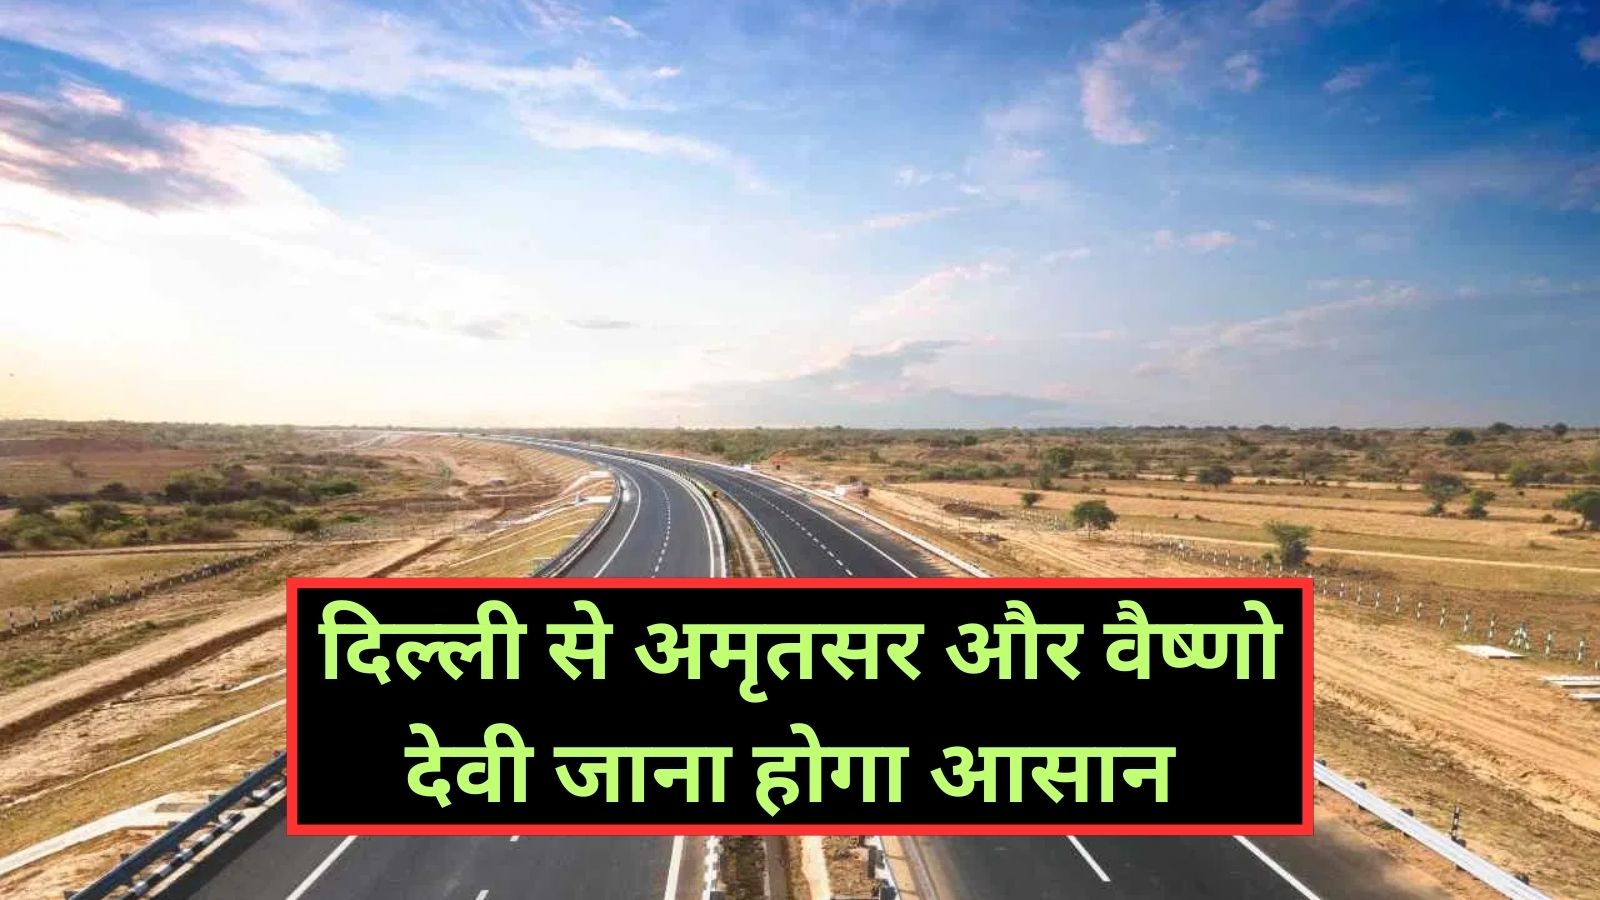 Delhi Amritsar Katra Expressway:दिल्ली से अमृतसर और वैष्णो देवी जाना होगा आसान ,4 राज्यों की सूरत बदल देगा दिल्ली अमृतसर कटरा एक्सप्रेसवे